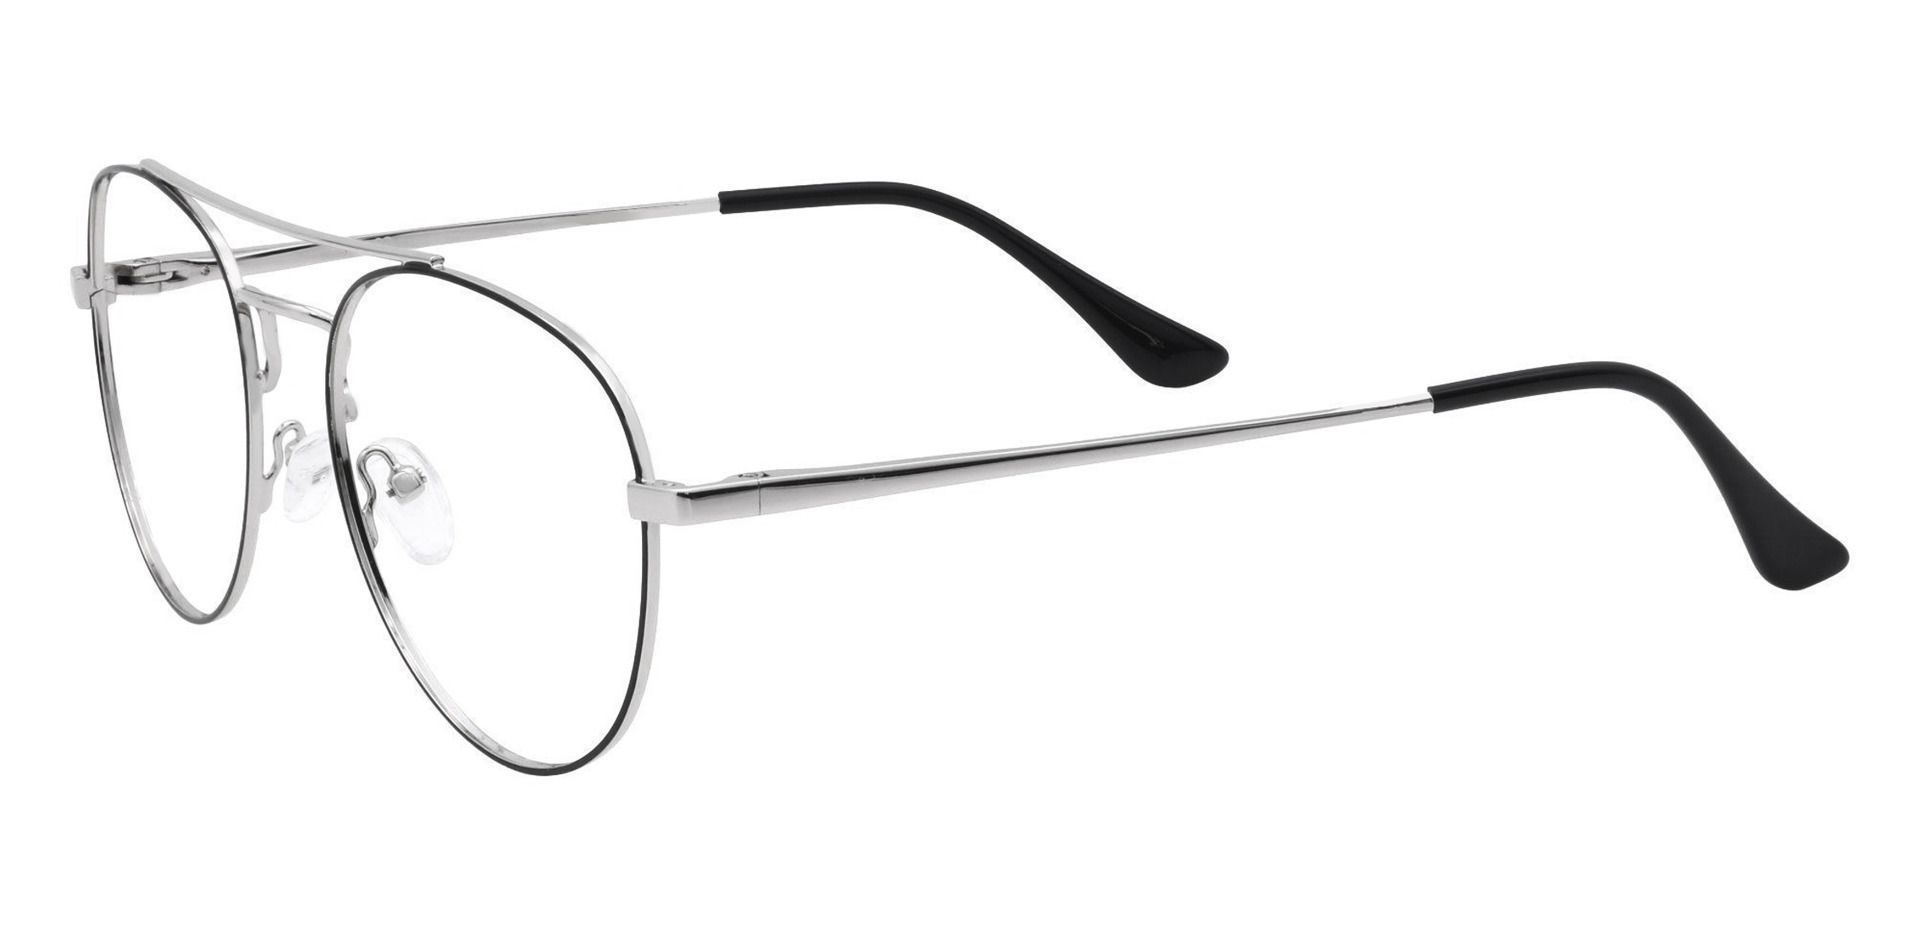 Trapp Aviator Progressive Glasses - Gray